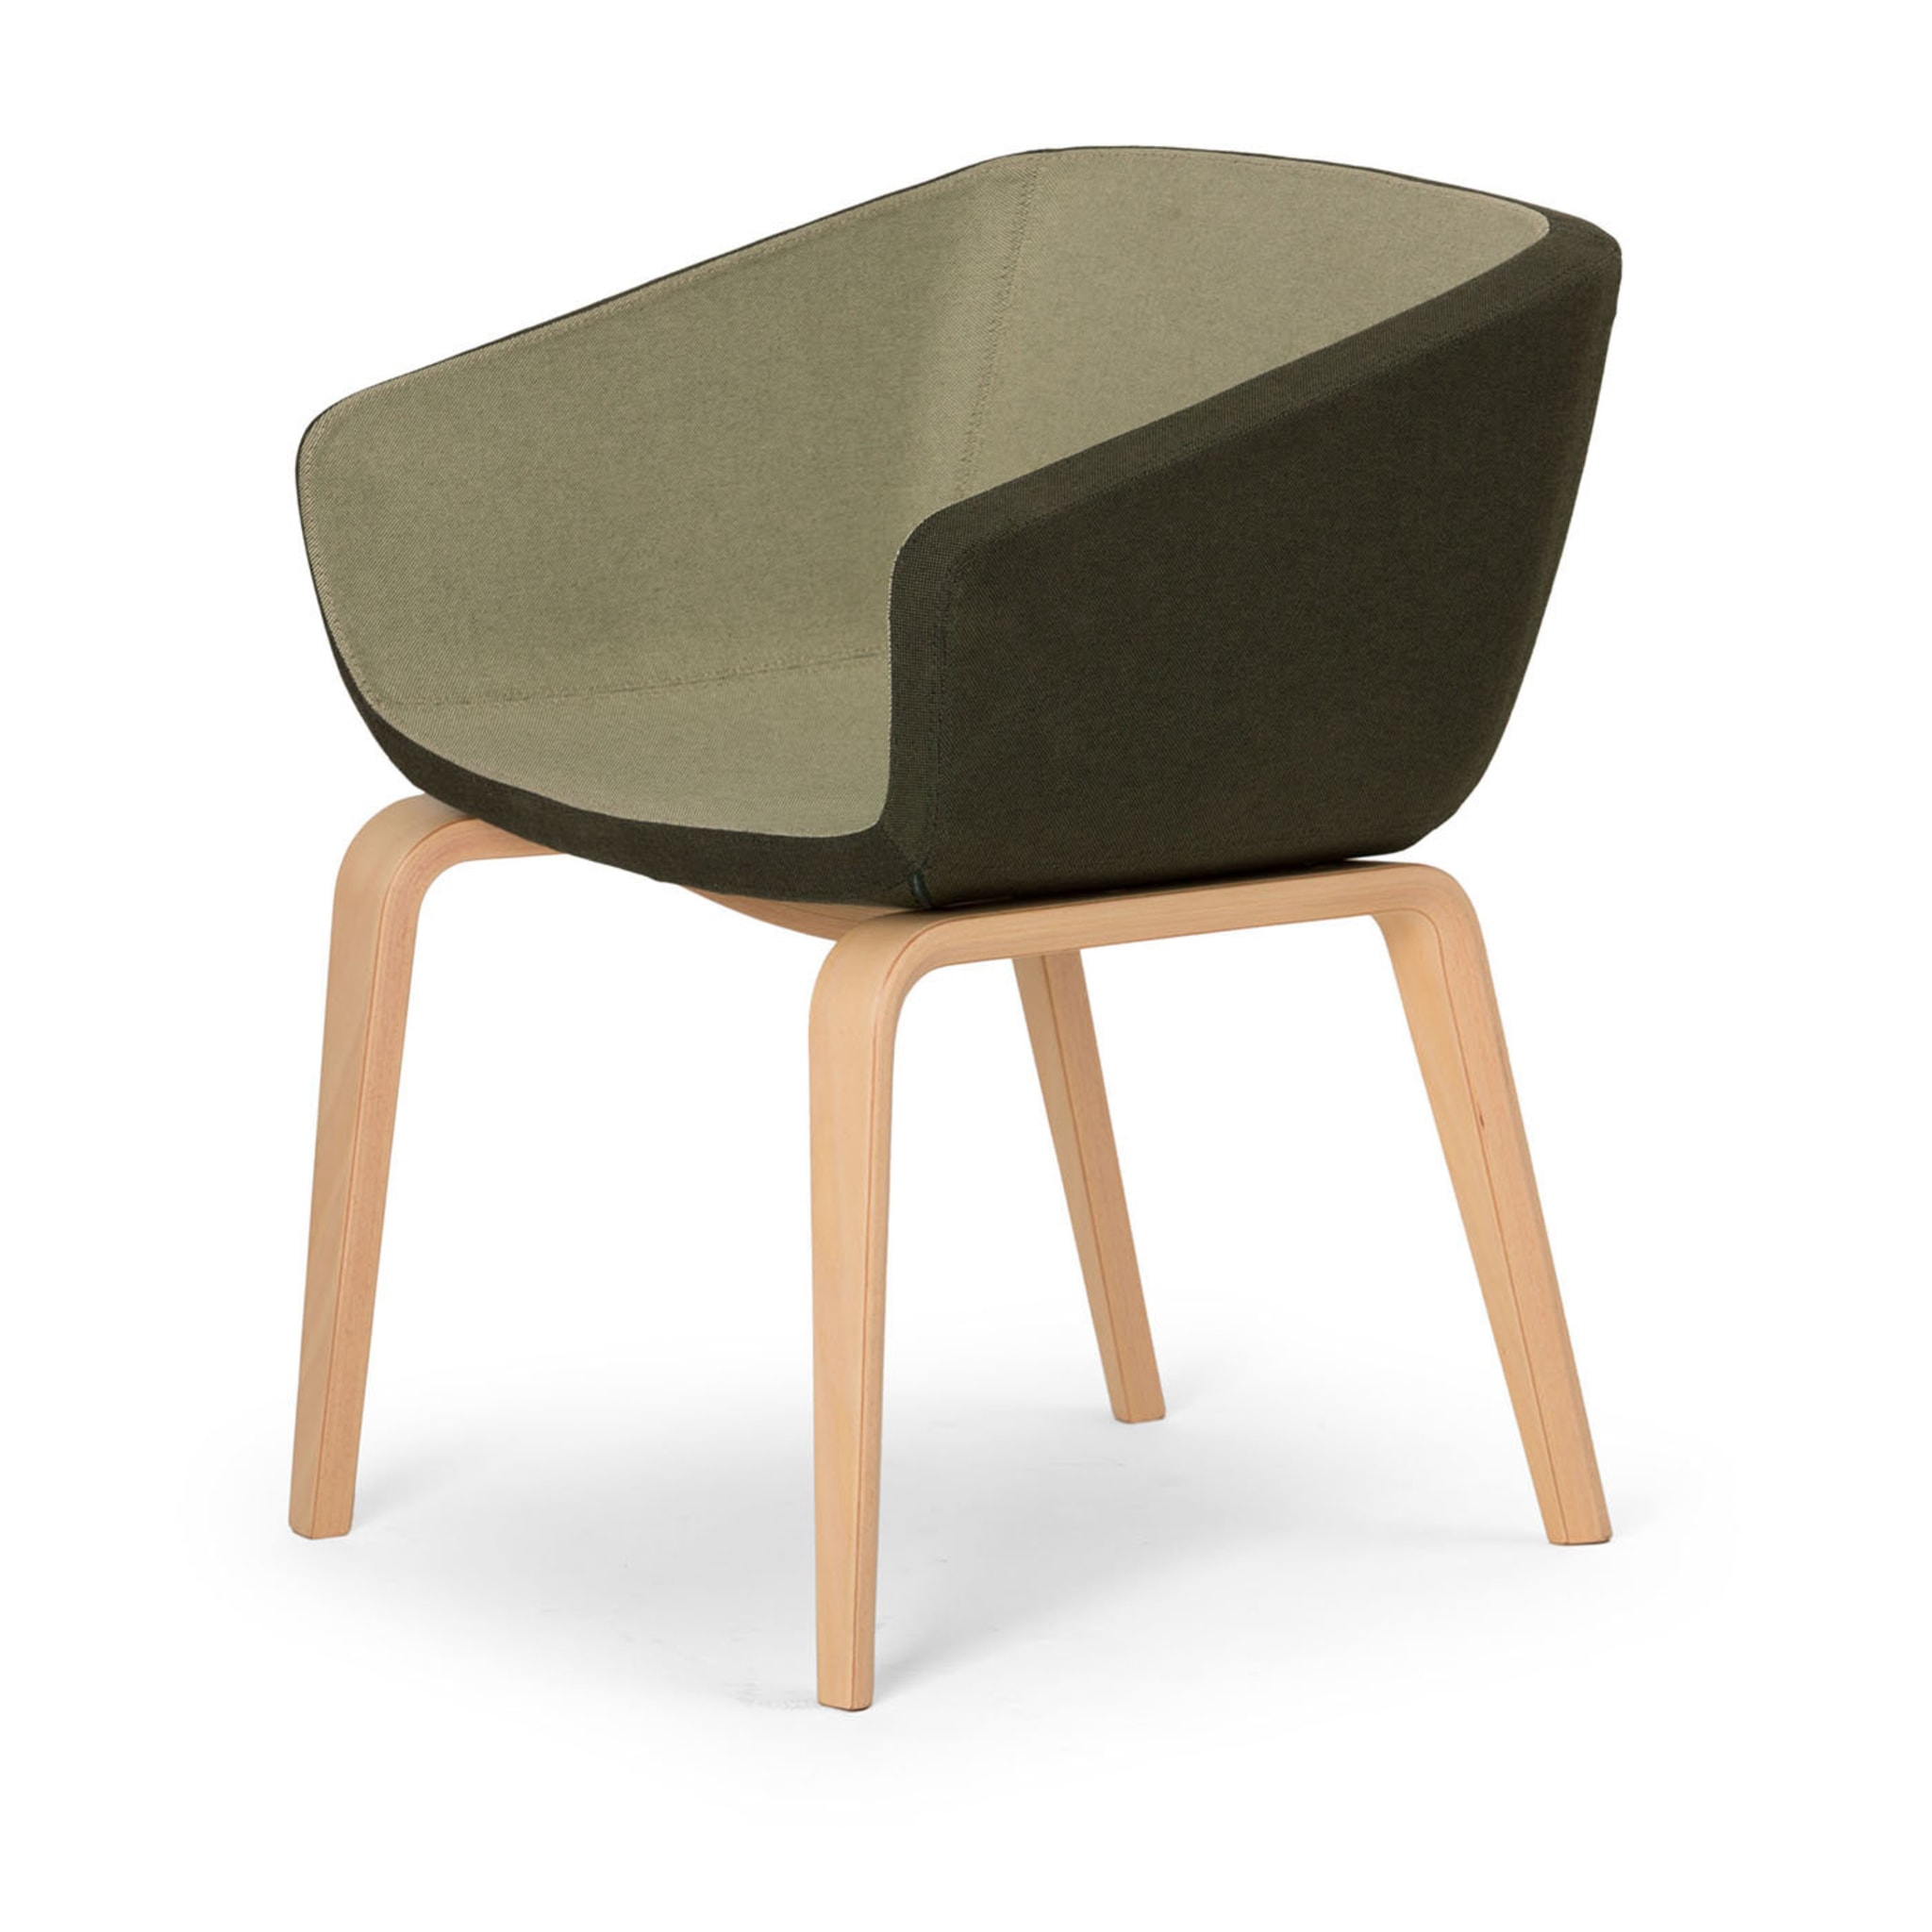 Arca Green chair - Alternative view 1